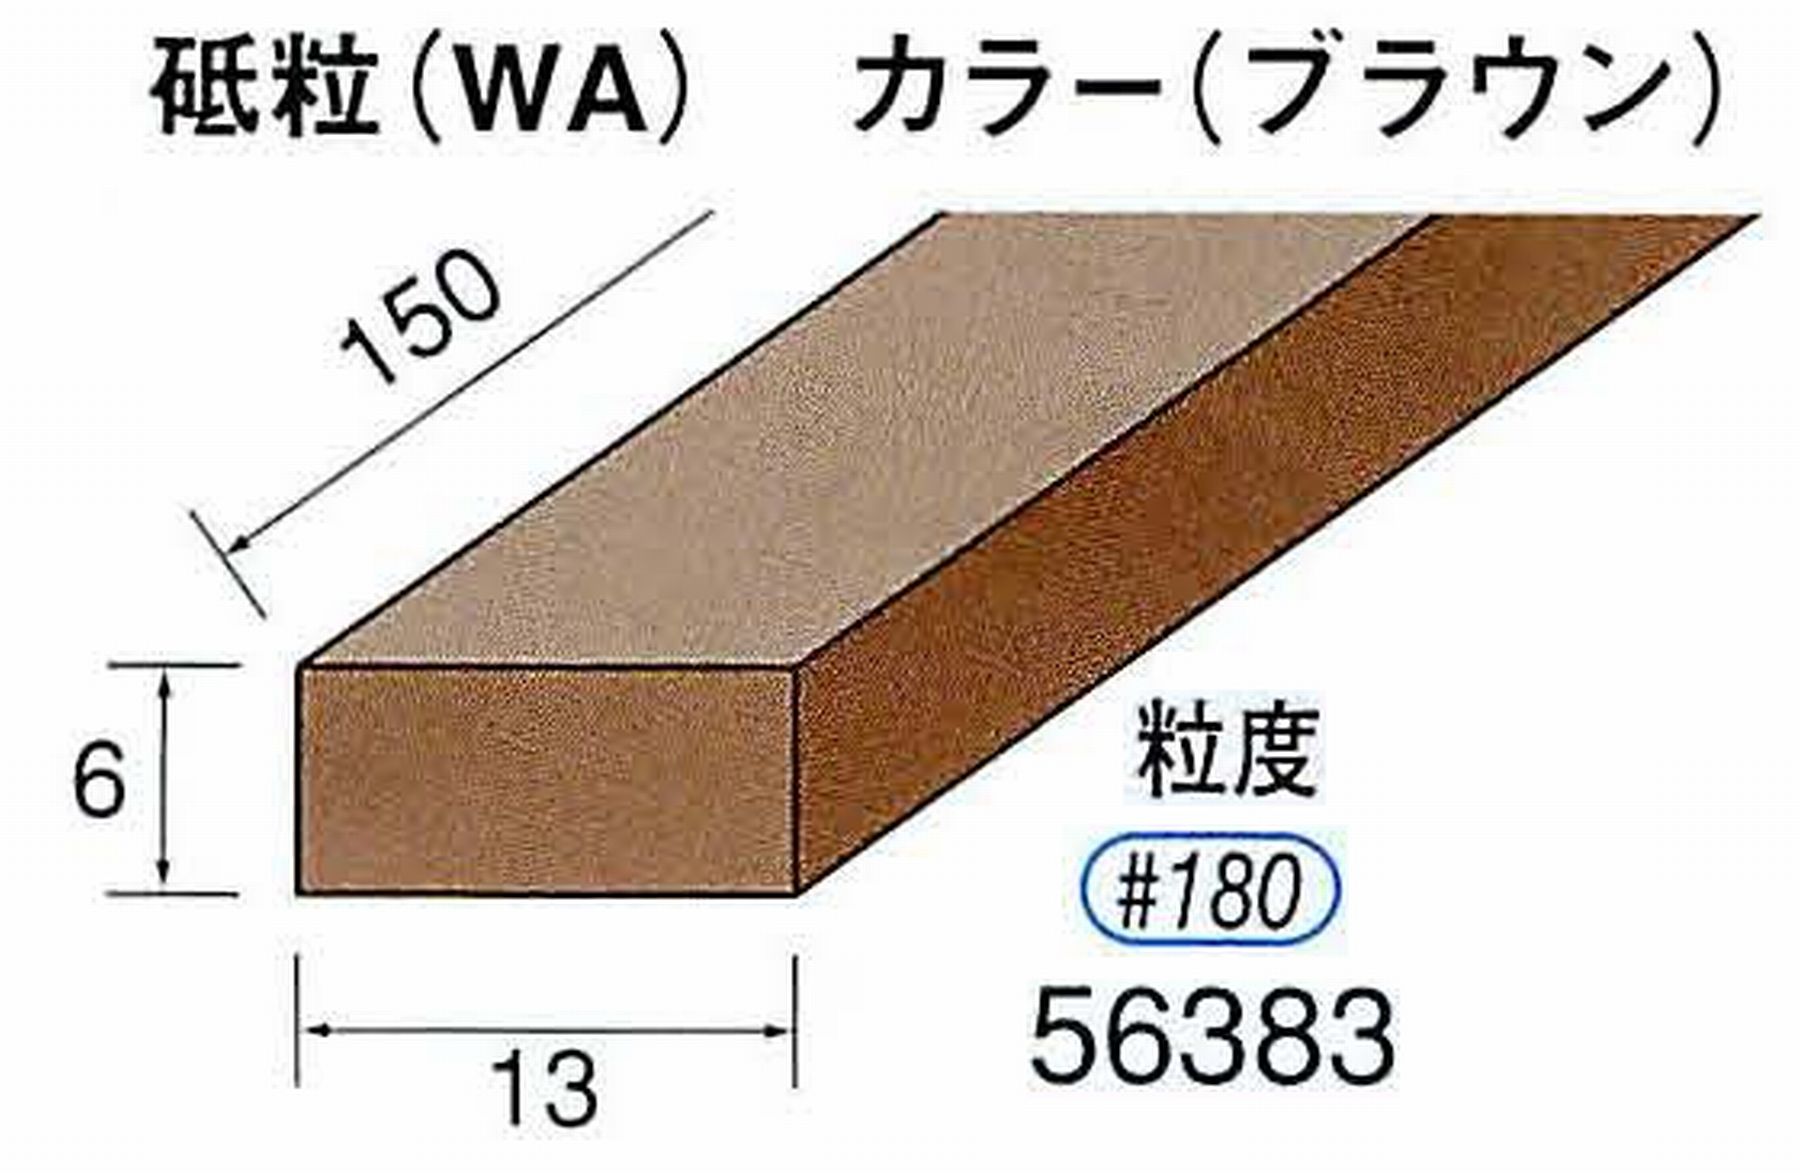 ナカニシ/NAKANISHI スティック砥石 ブラウン・フィニッシュシリーズ 砥粒(WA) 56383